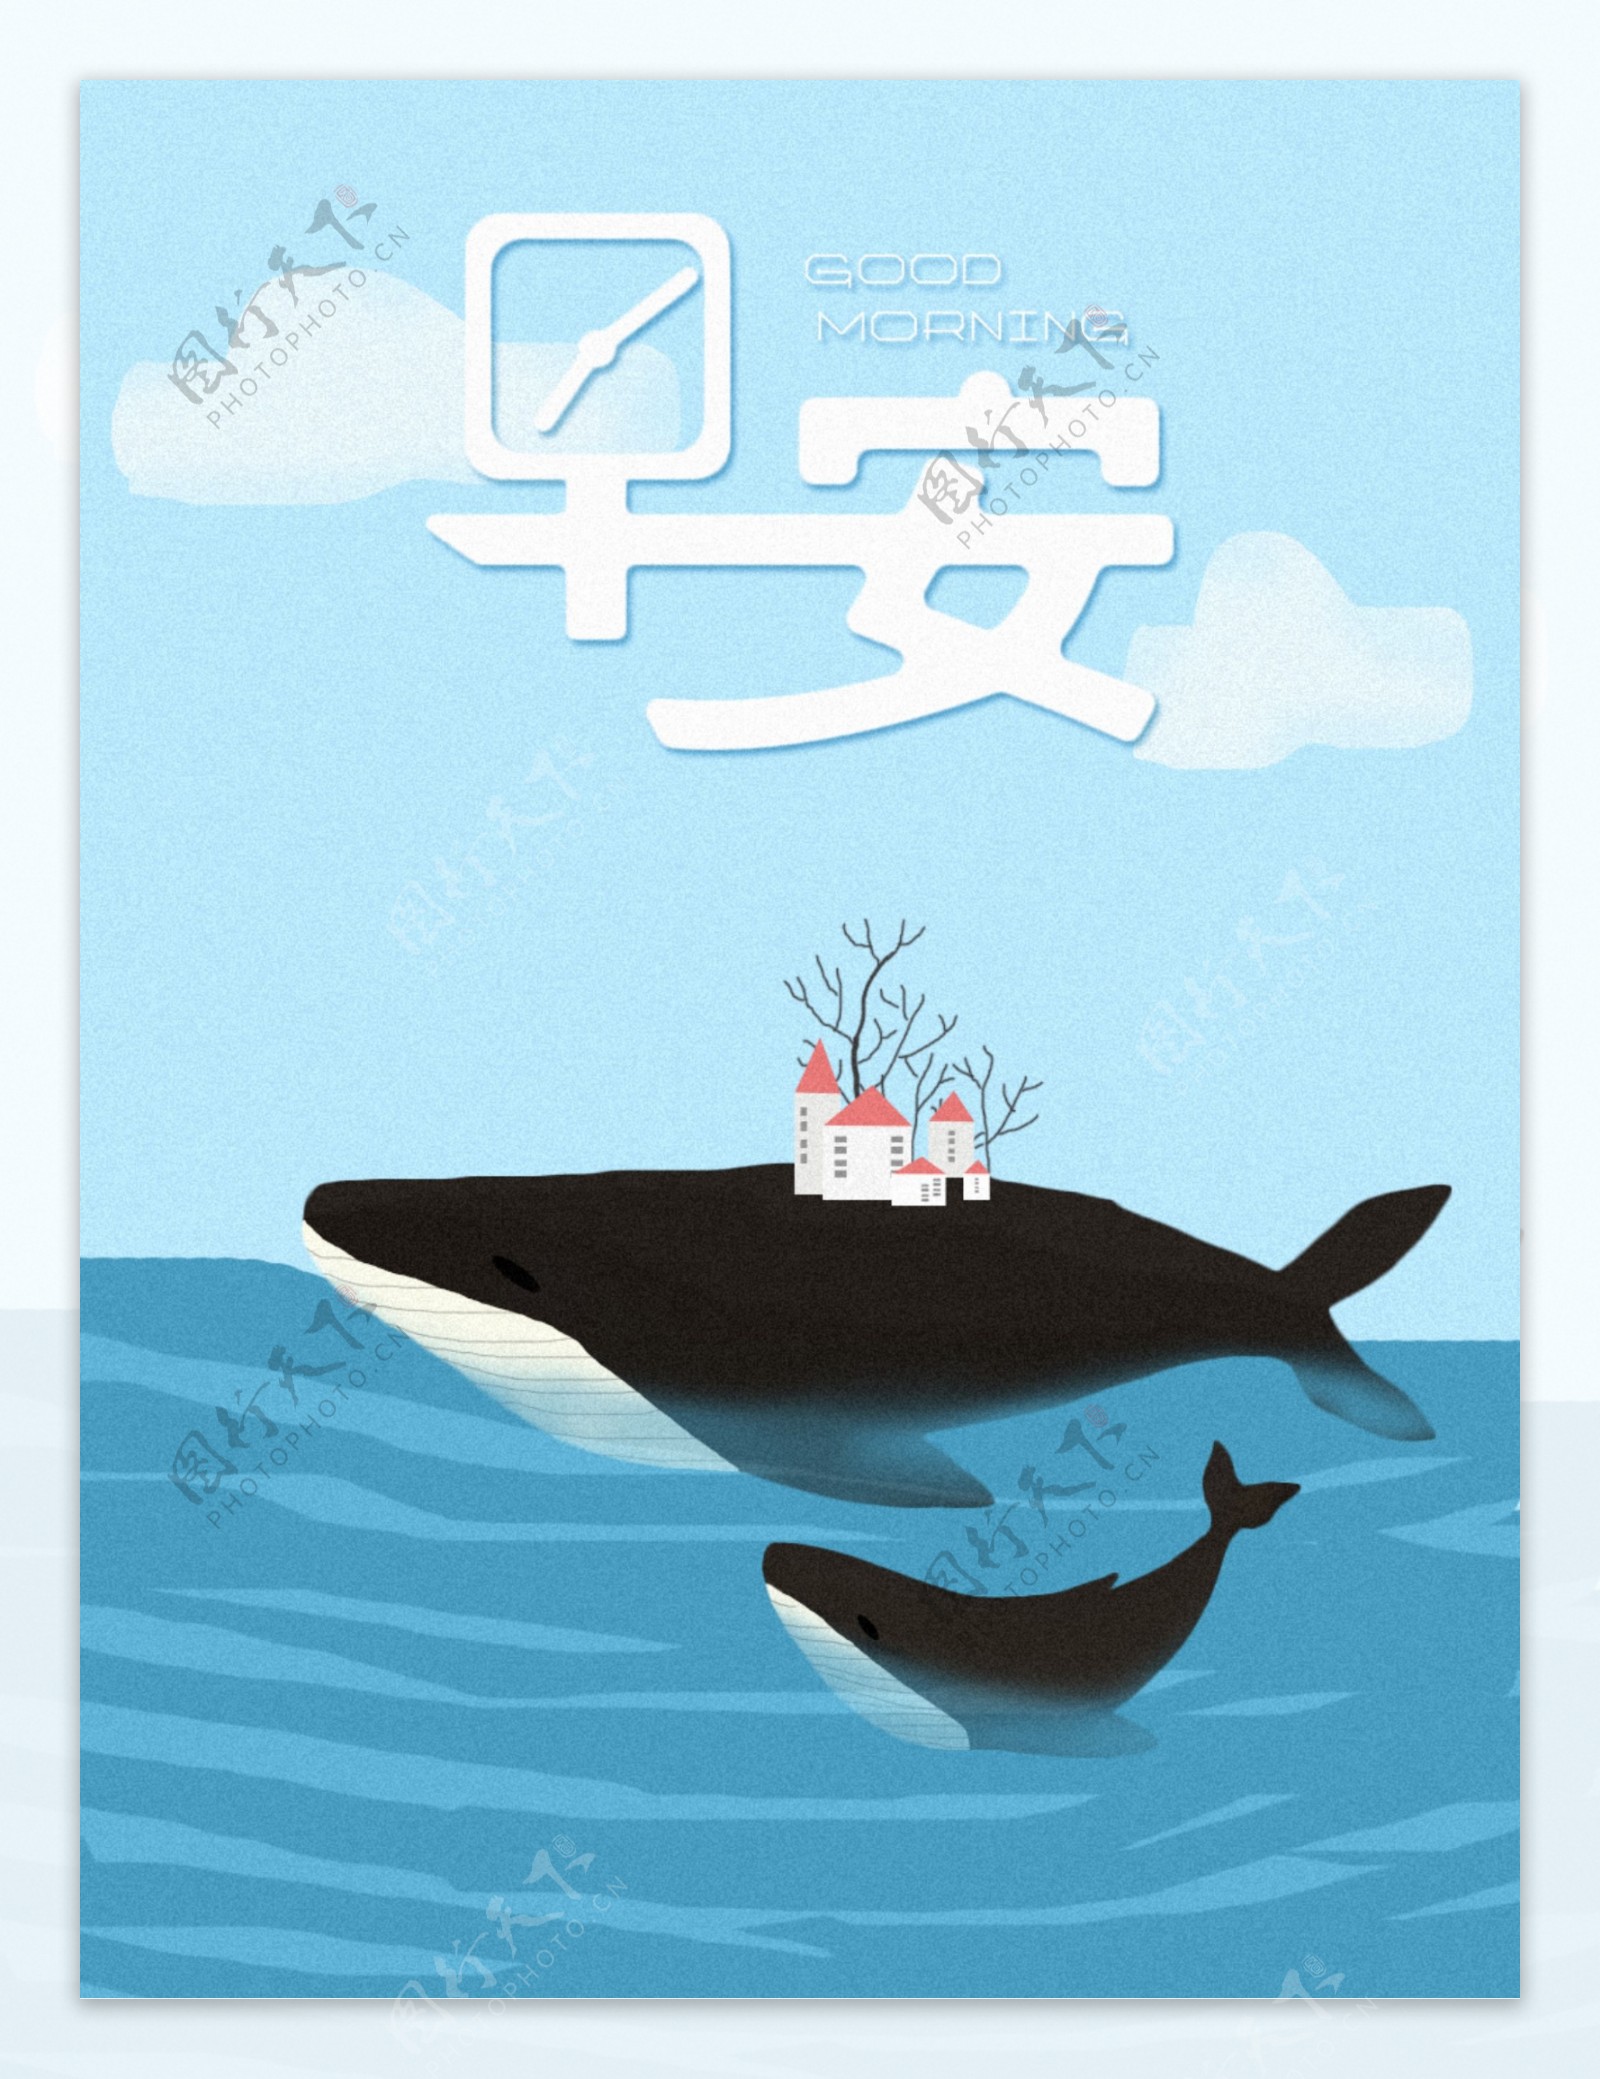 手绘插画蓝色大海鲸鱼早安清新唯美创意海报